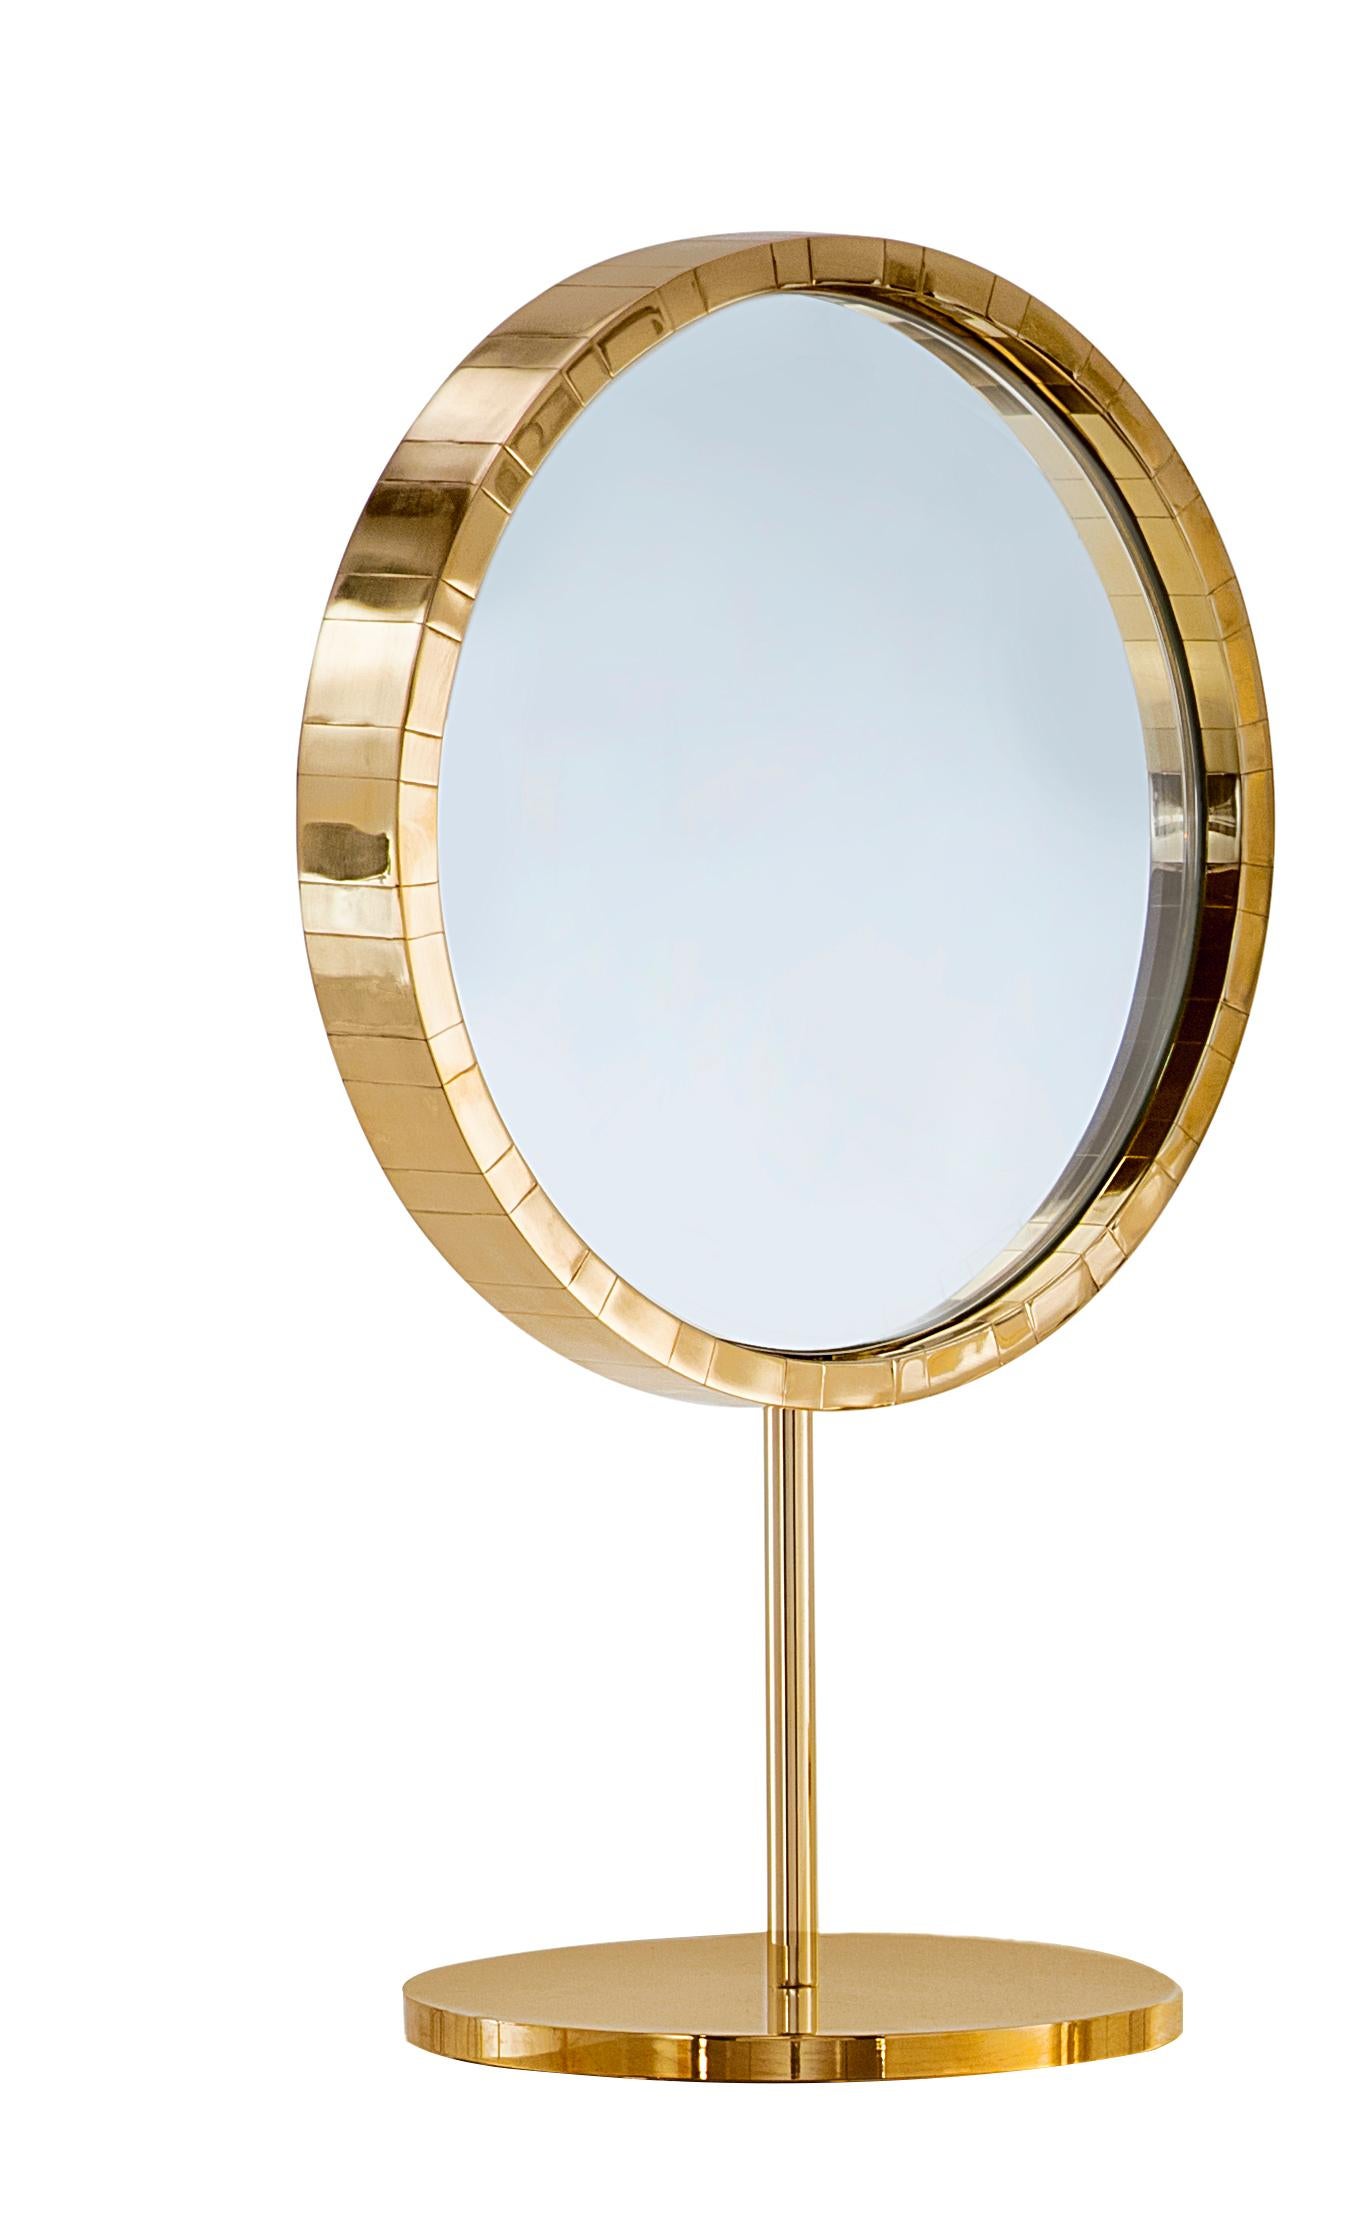 Paris Table Mirror with Brass Inlay von Matteo Cibic ist ein eleganter Tischspiegel aus Messing.

Matteo Cibic entwarf 2014-15 die Kollektion Vanilla Noir für Scarlet Splendour. Die Kollektion umfasst mittlerweile mehr als fünfzig wunderschöne